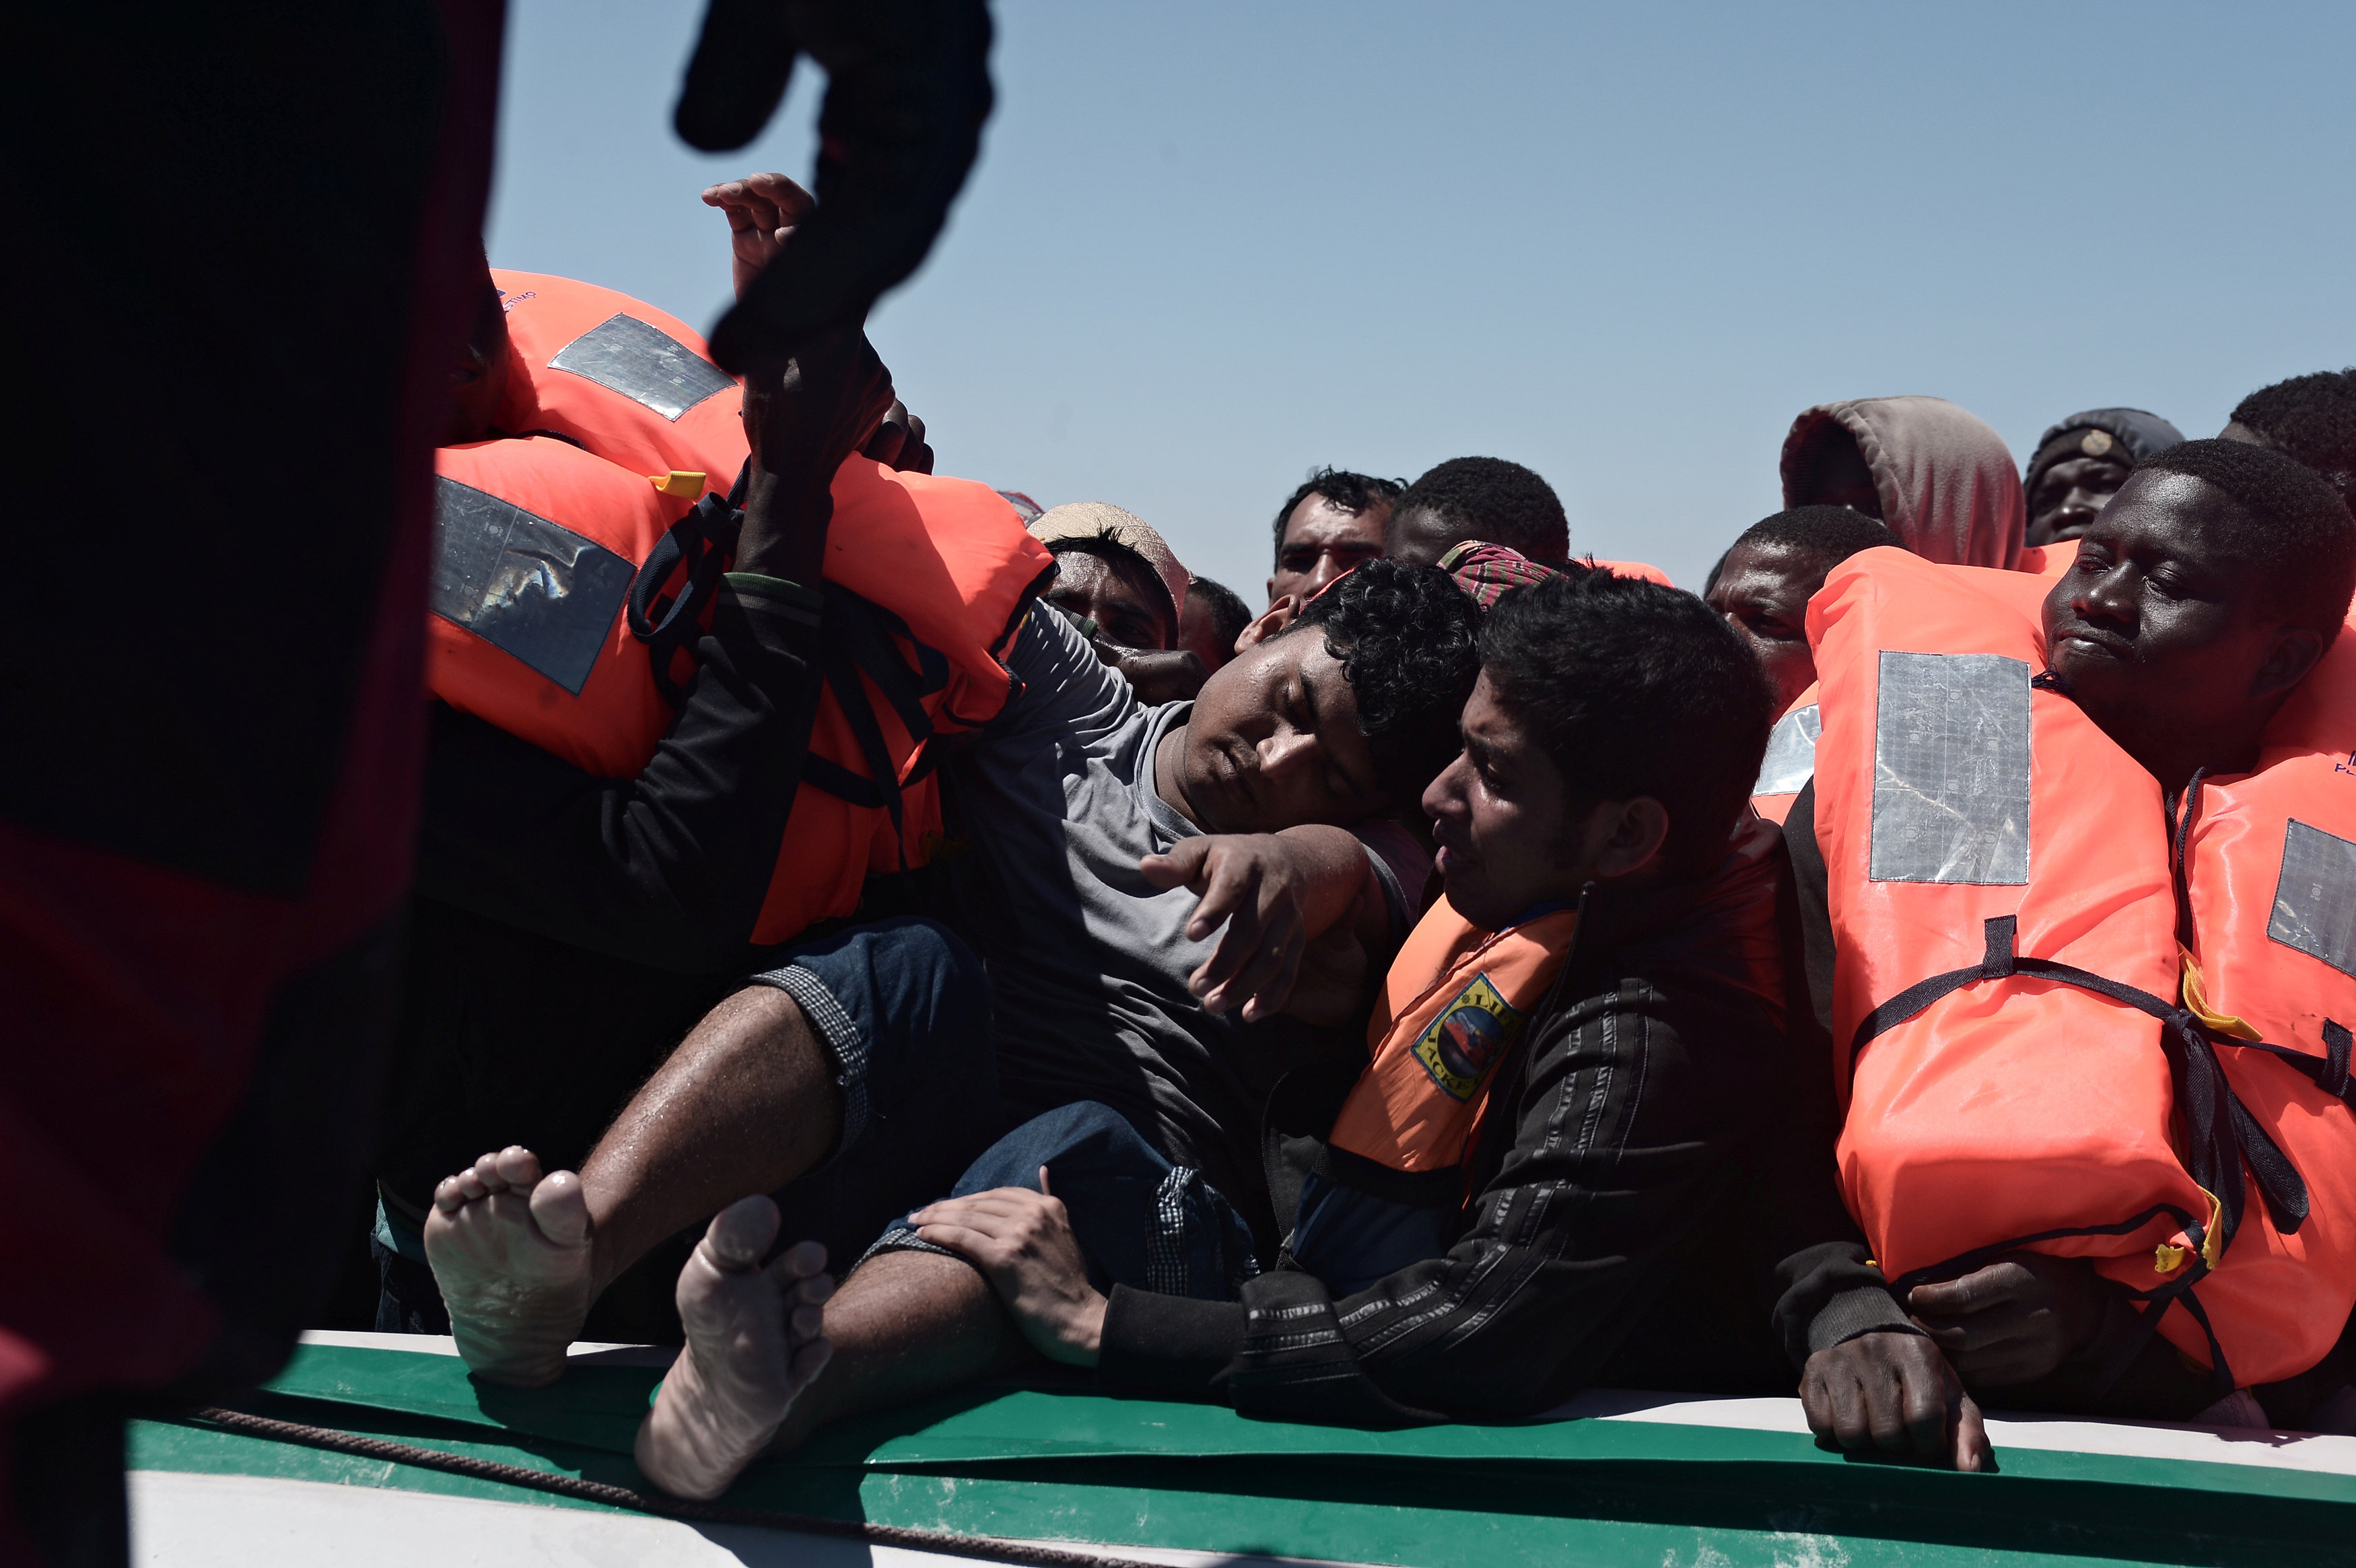 خفر السواحل الليبى ينقذ ينقذ مهاجرين غير شرعيين